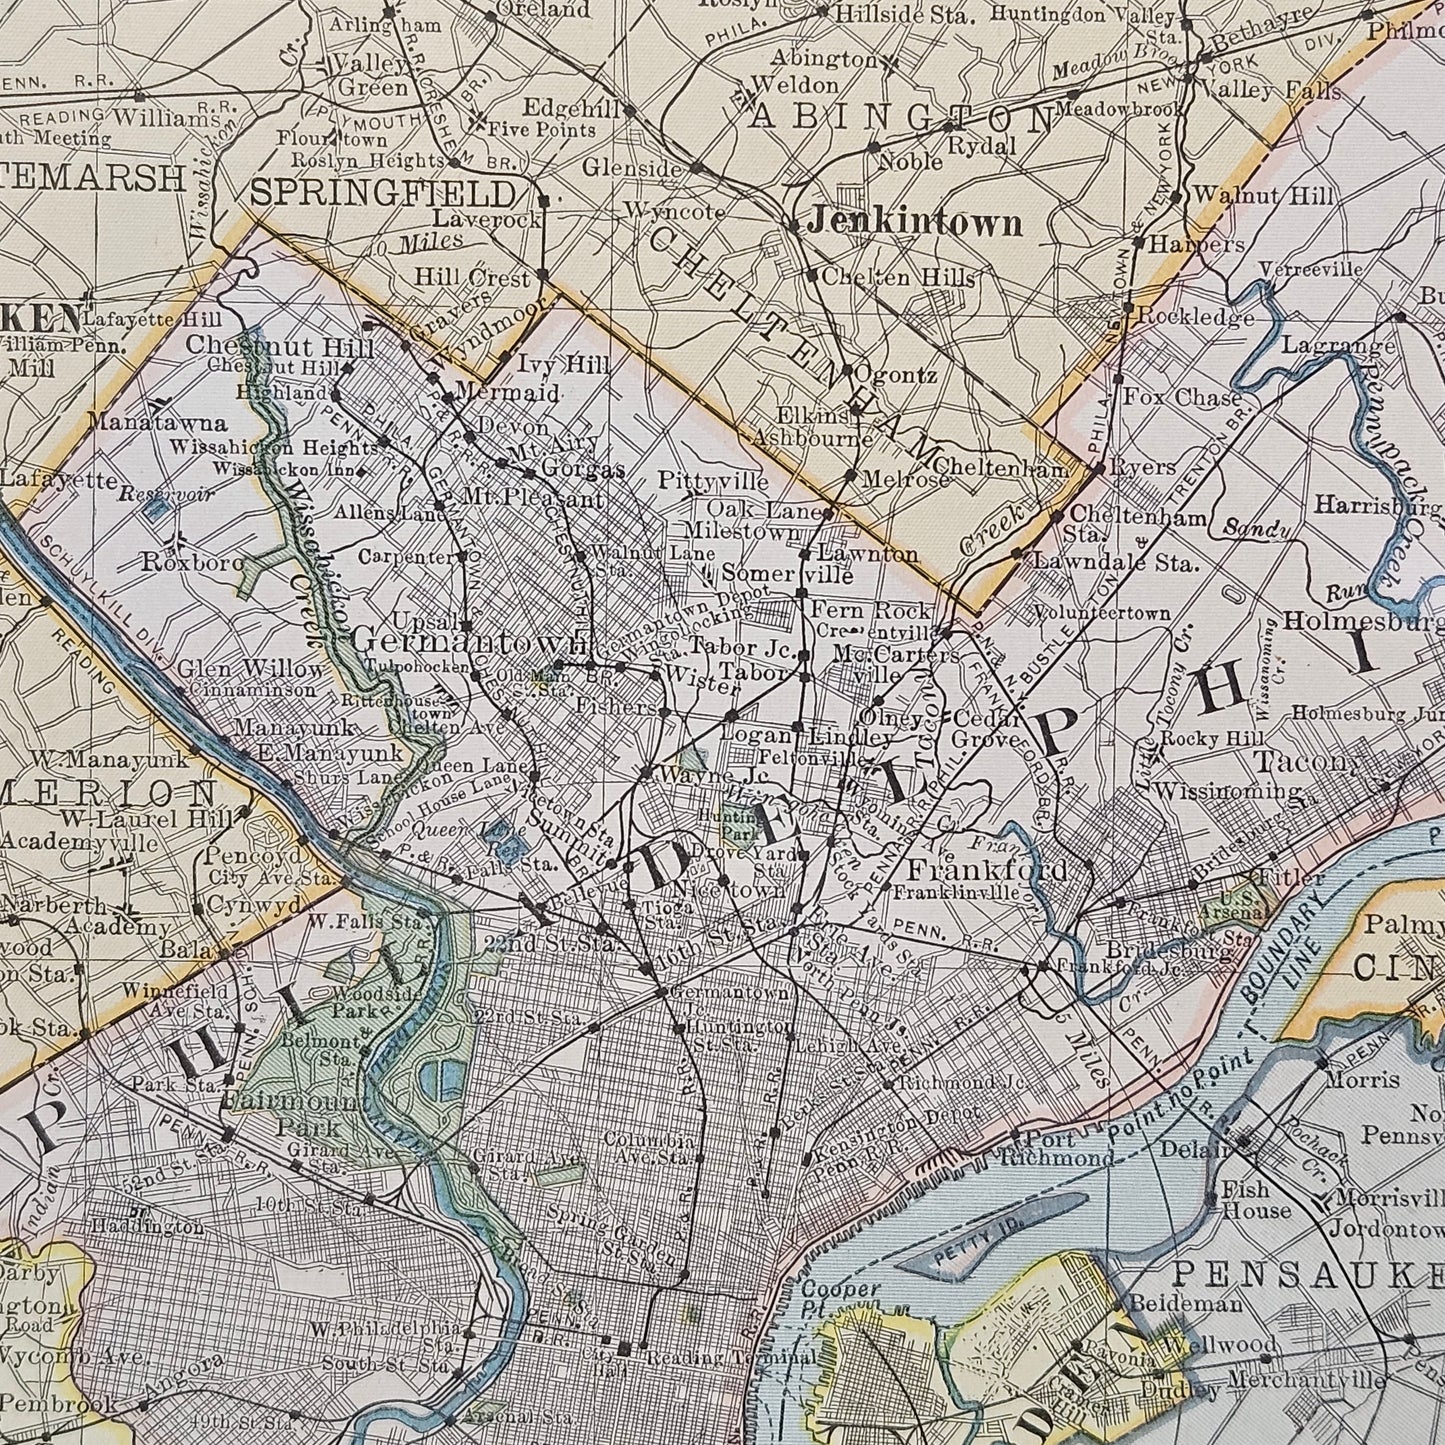 Antique Framed Map of Philadelphia Pennsylvania